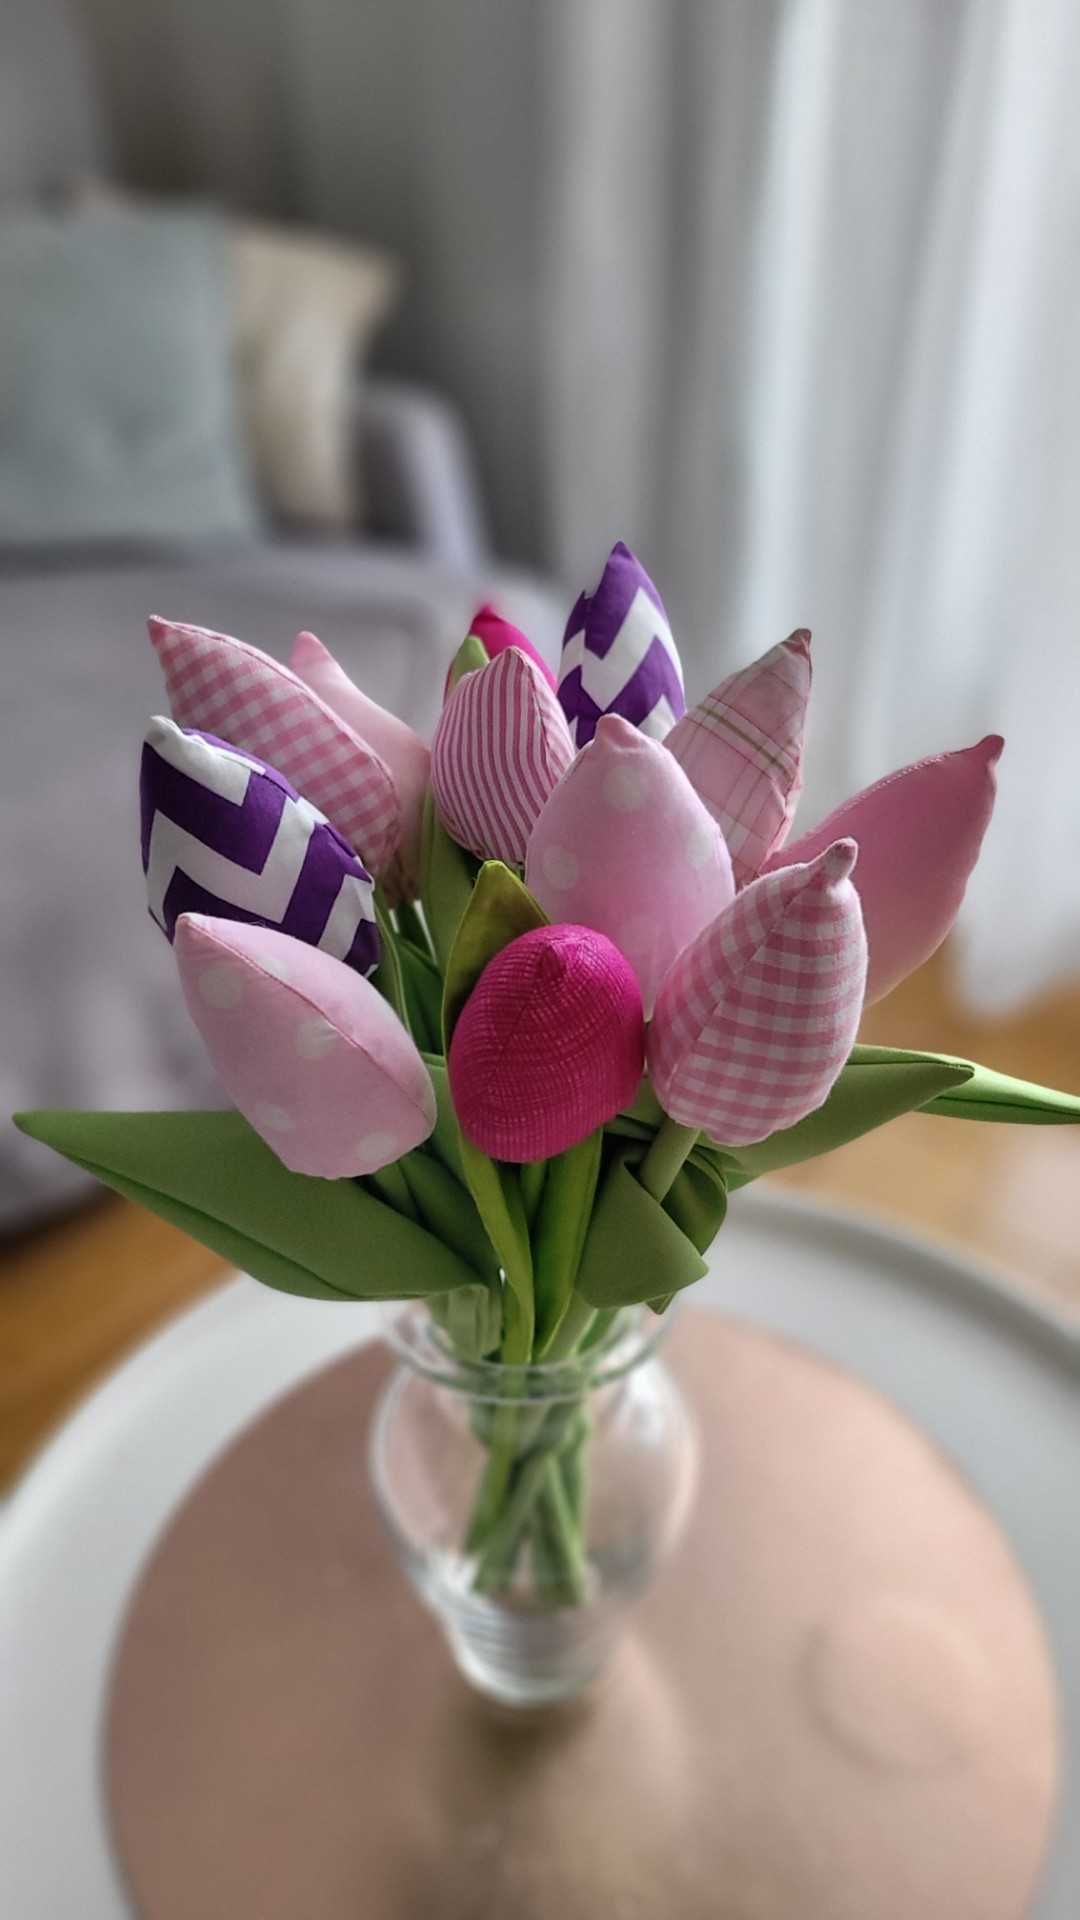 Wielkanocna ozdoba - 5zł za 1 szt. tulipana. Bukiet wiosennych kwiatów